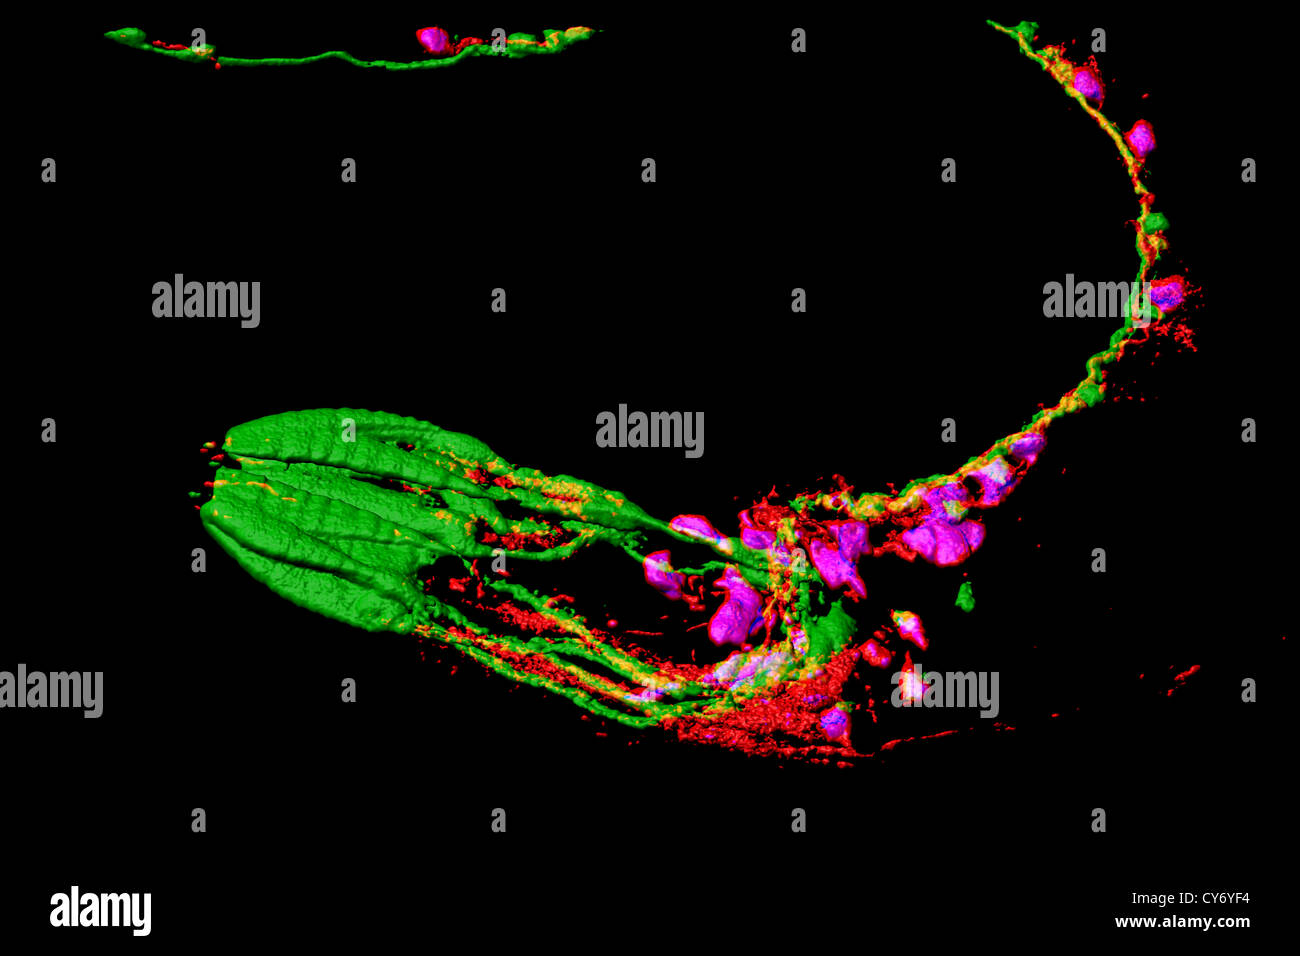 Neuronen und Muskeln von Caenorhabditis Elegans, eine freilebende transparent Nematode (Fadenwurm), ca. 1 mm in der Länge. Stockfoto